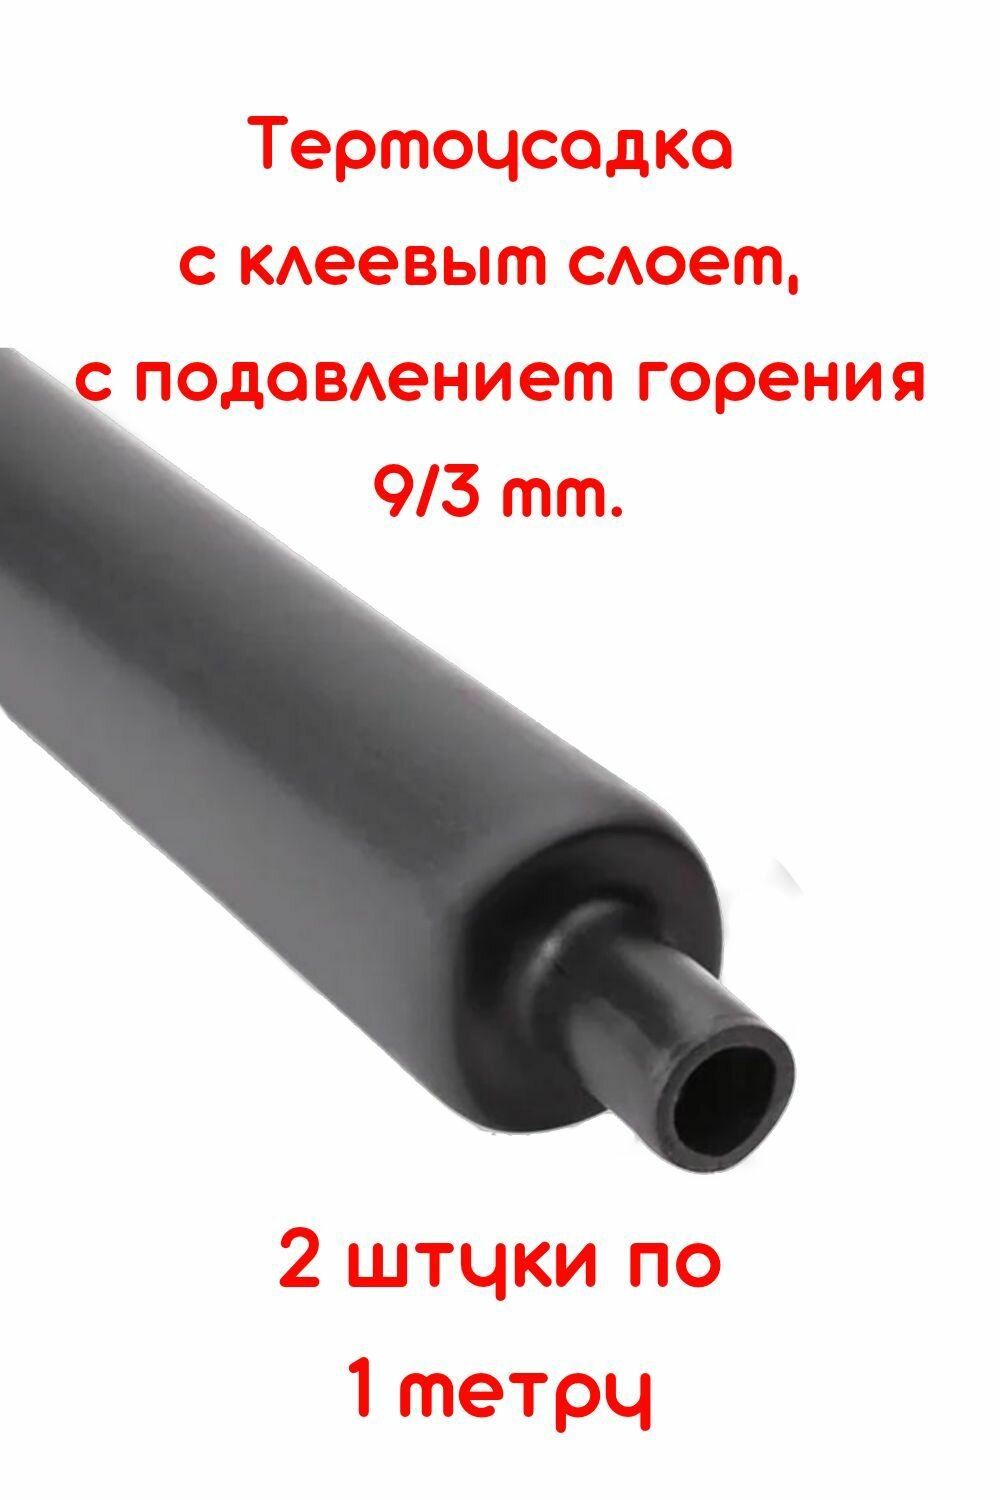 Термоусадка для проводов, термоусадочная трубка с клеевым слоем 2 штуки черная 9/3 мм длина 1м. ТТК(3:1), Клеевая трубка для проводов, с подавлением горения